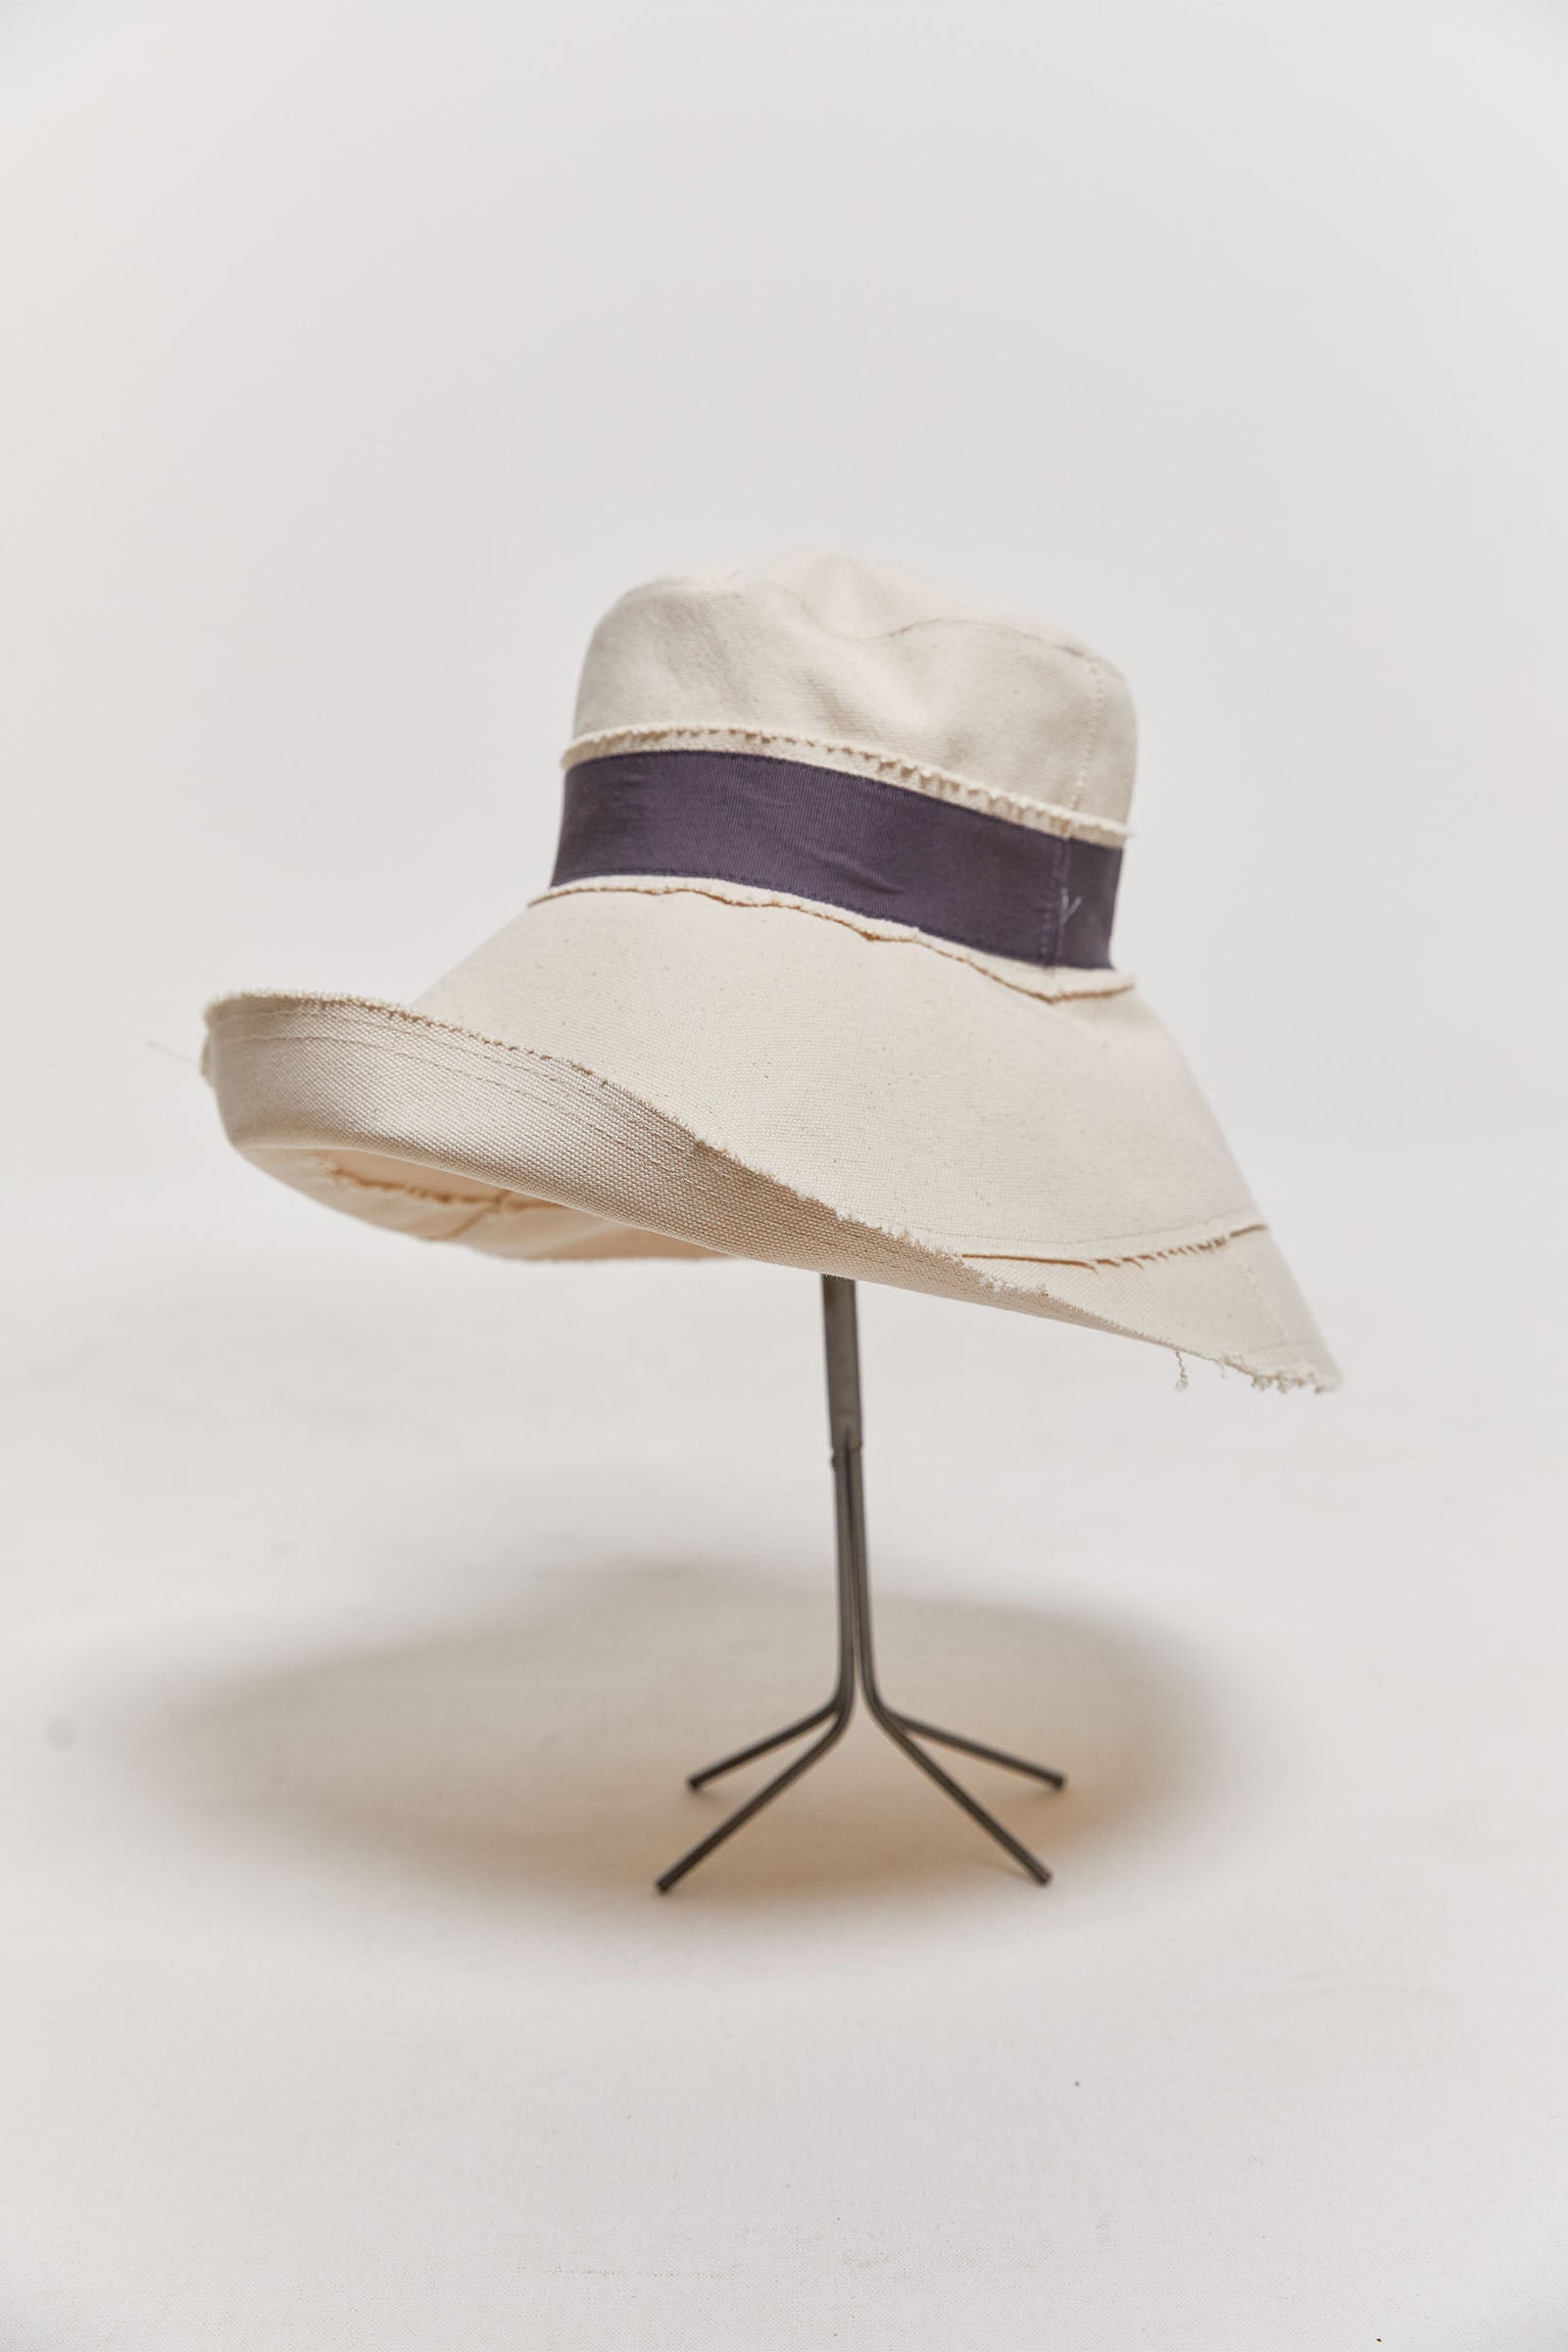 Dia | Shop Lola Hats Dia Cotton Canvas Hats | byfreer